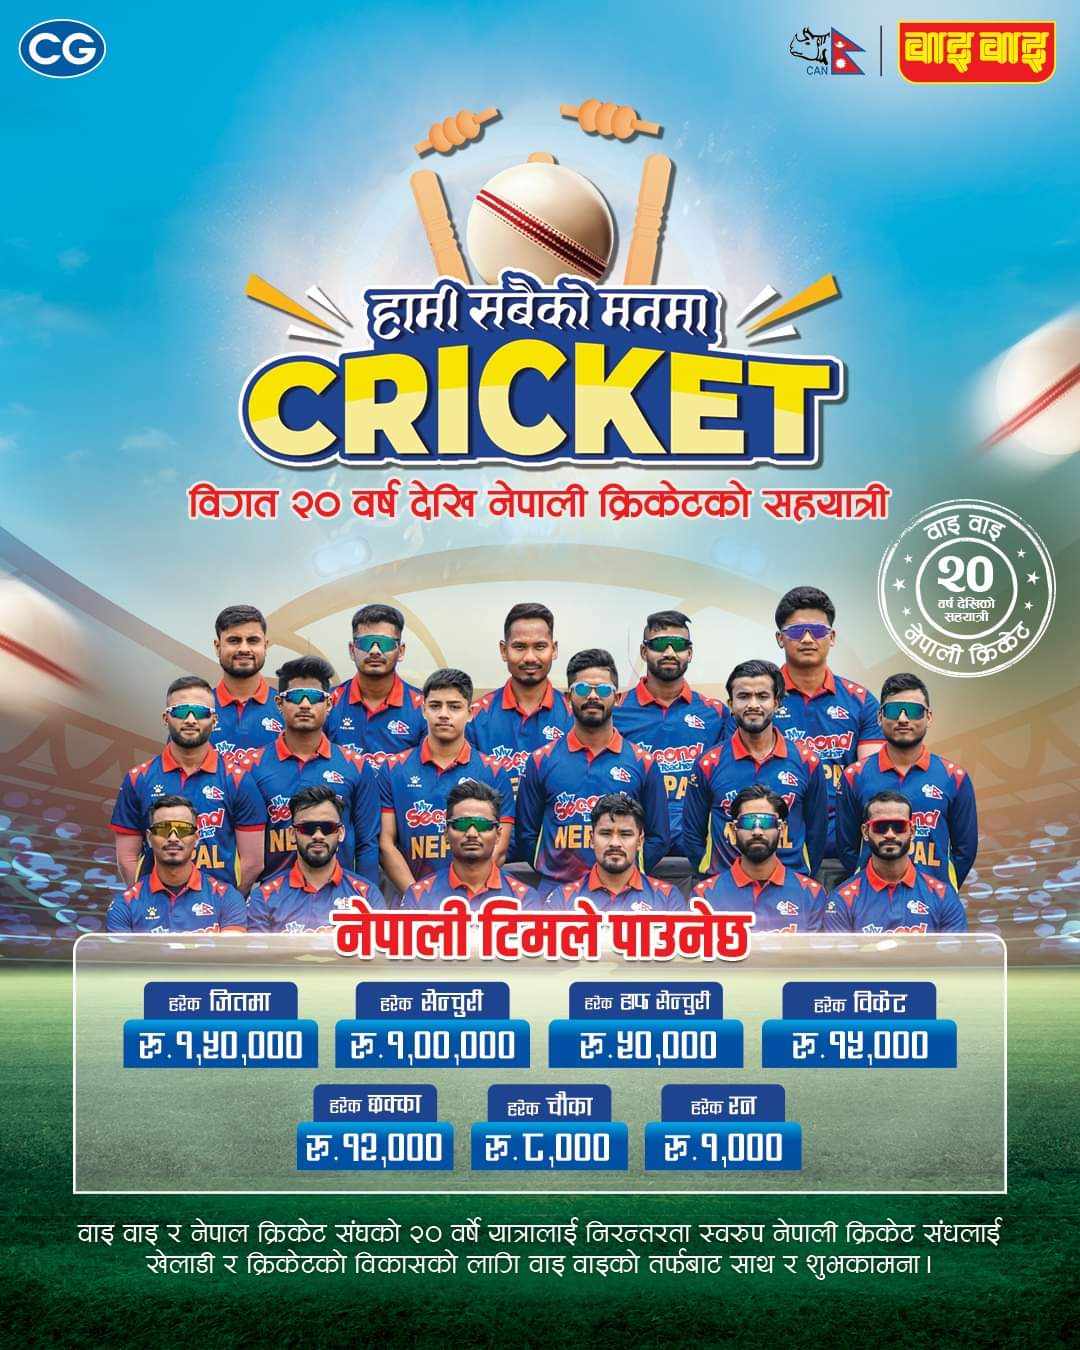 नेपाली क्रिकेट टीमलाई वाइवाईकाे प्राेत्साहनः विश्वकपमा प्रत्येक रनलाई एक हजार, शतकलाई लाख दिने